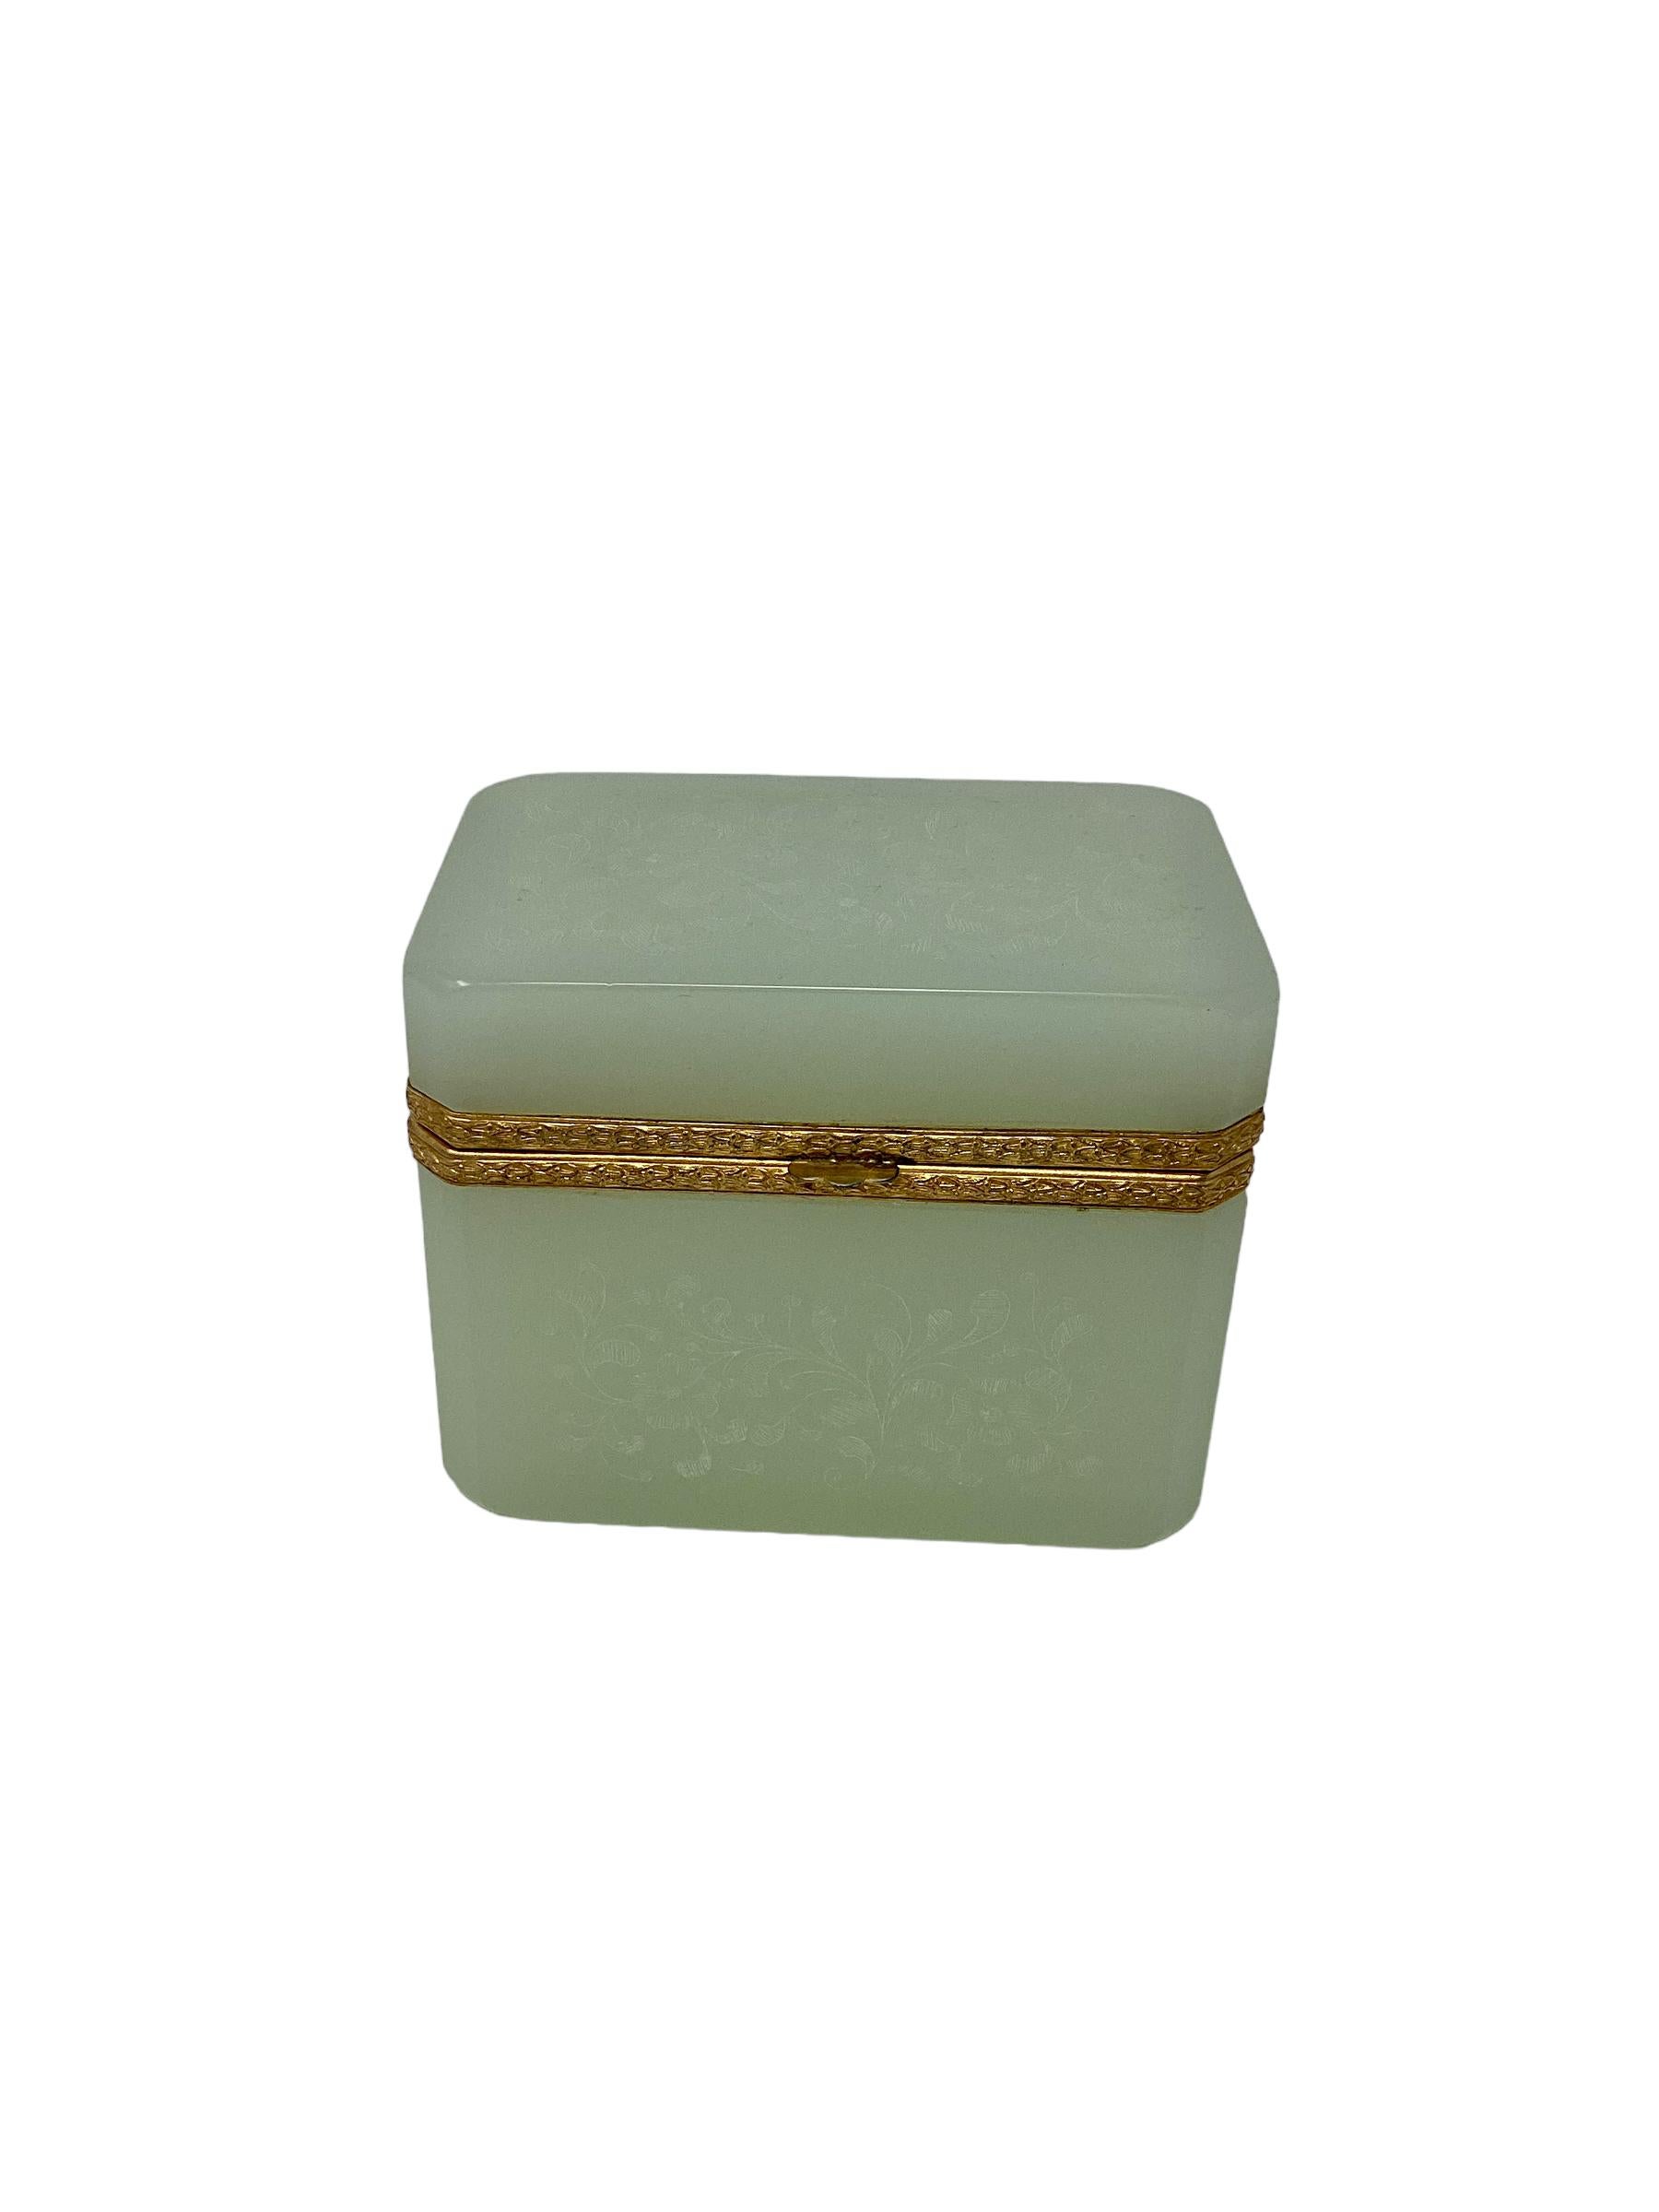 Boîte ancienne en opaline verte avec décor gravé. Verre opalin vert pâle, avec décor gravé en volutes sur le verre et montures en bronze doré.